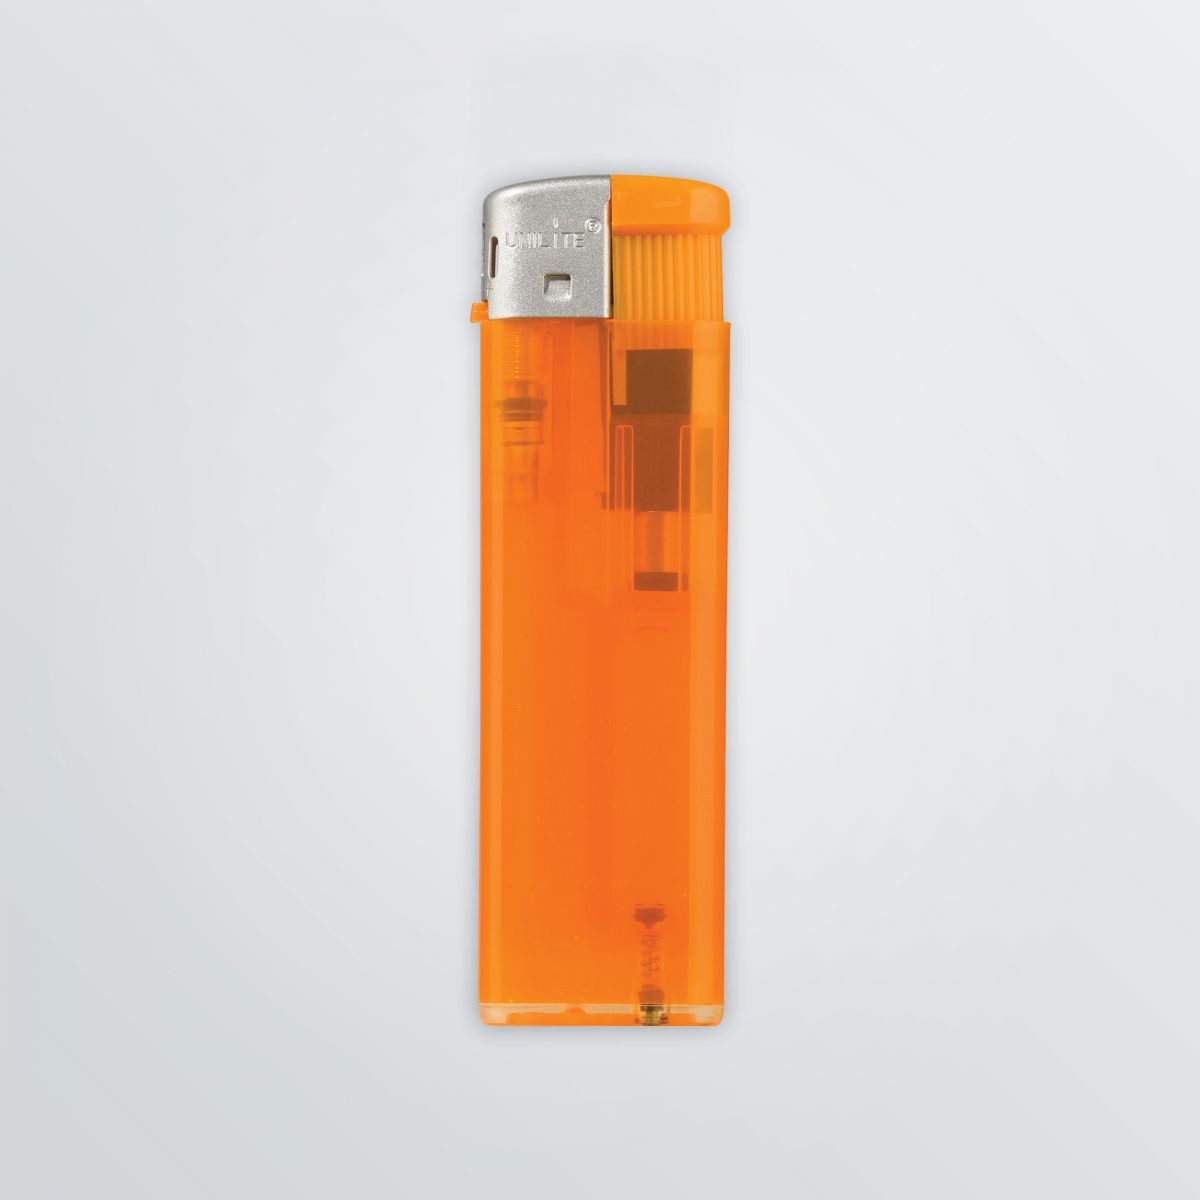 Elektrisches Feuerzeug aus transparentem Kunststoff in orange ohne Werbeanbringung